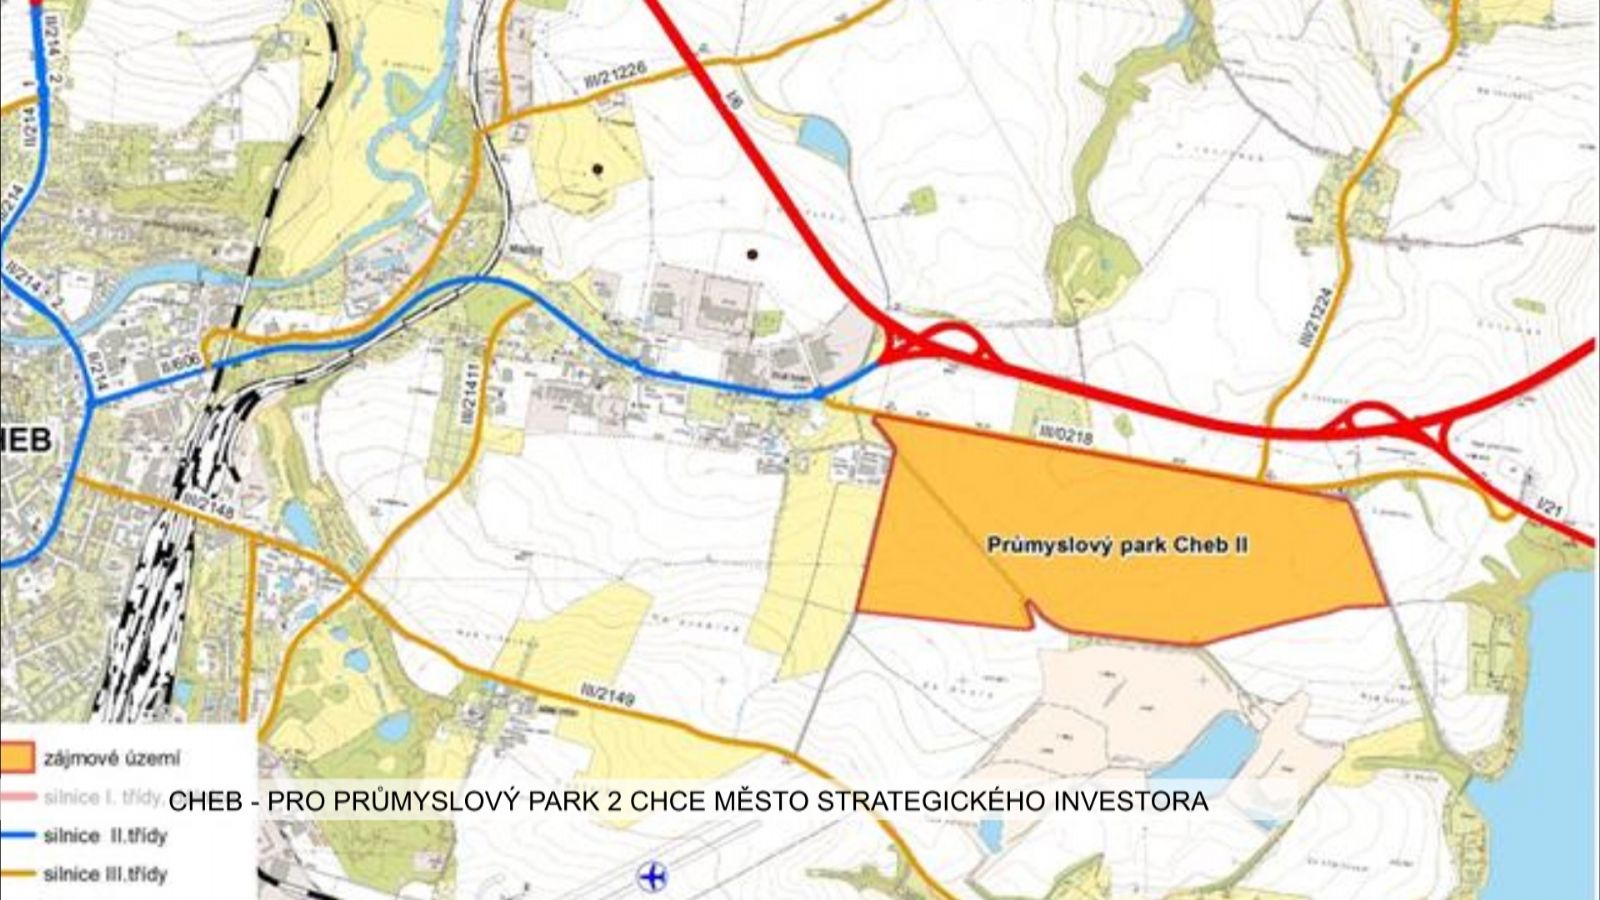 Cheb: Pro průmyslový park 2 chce město strategického investora (TV Západ)